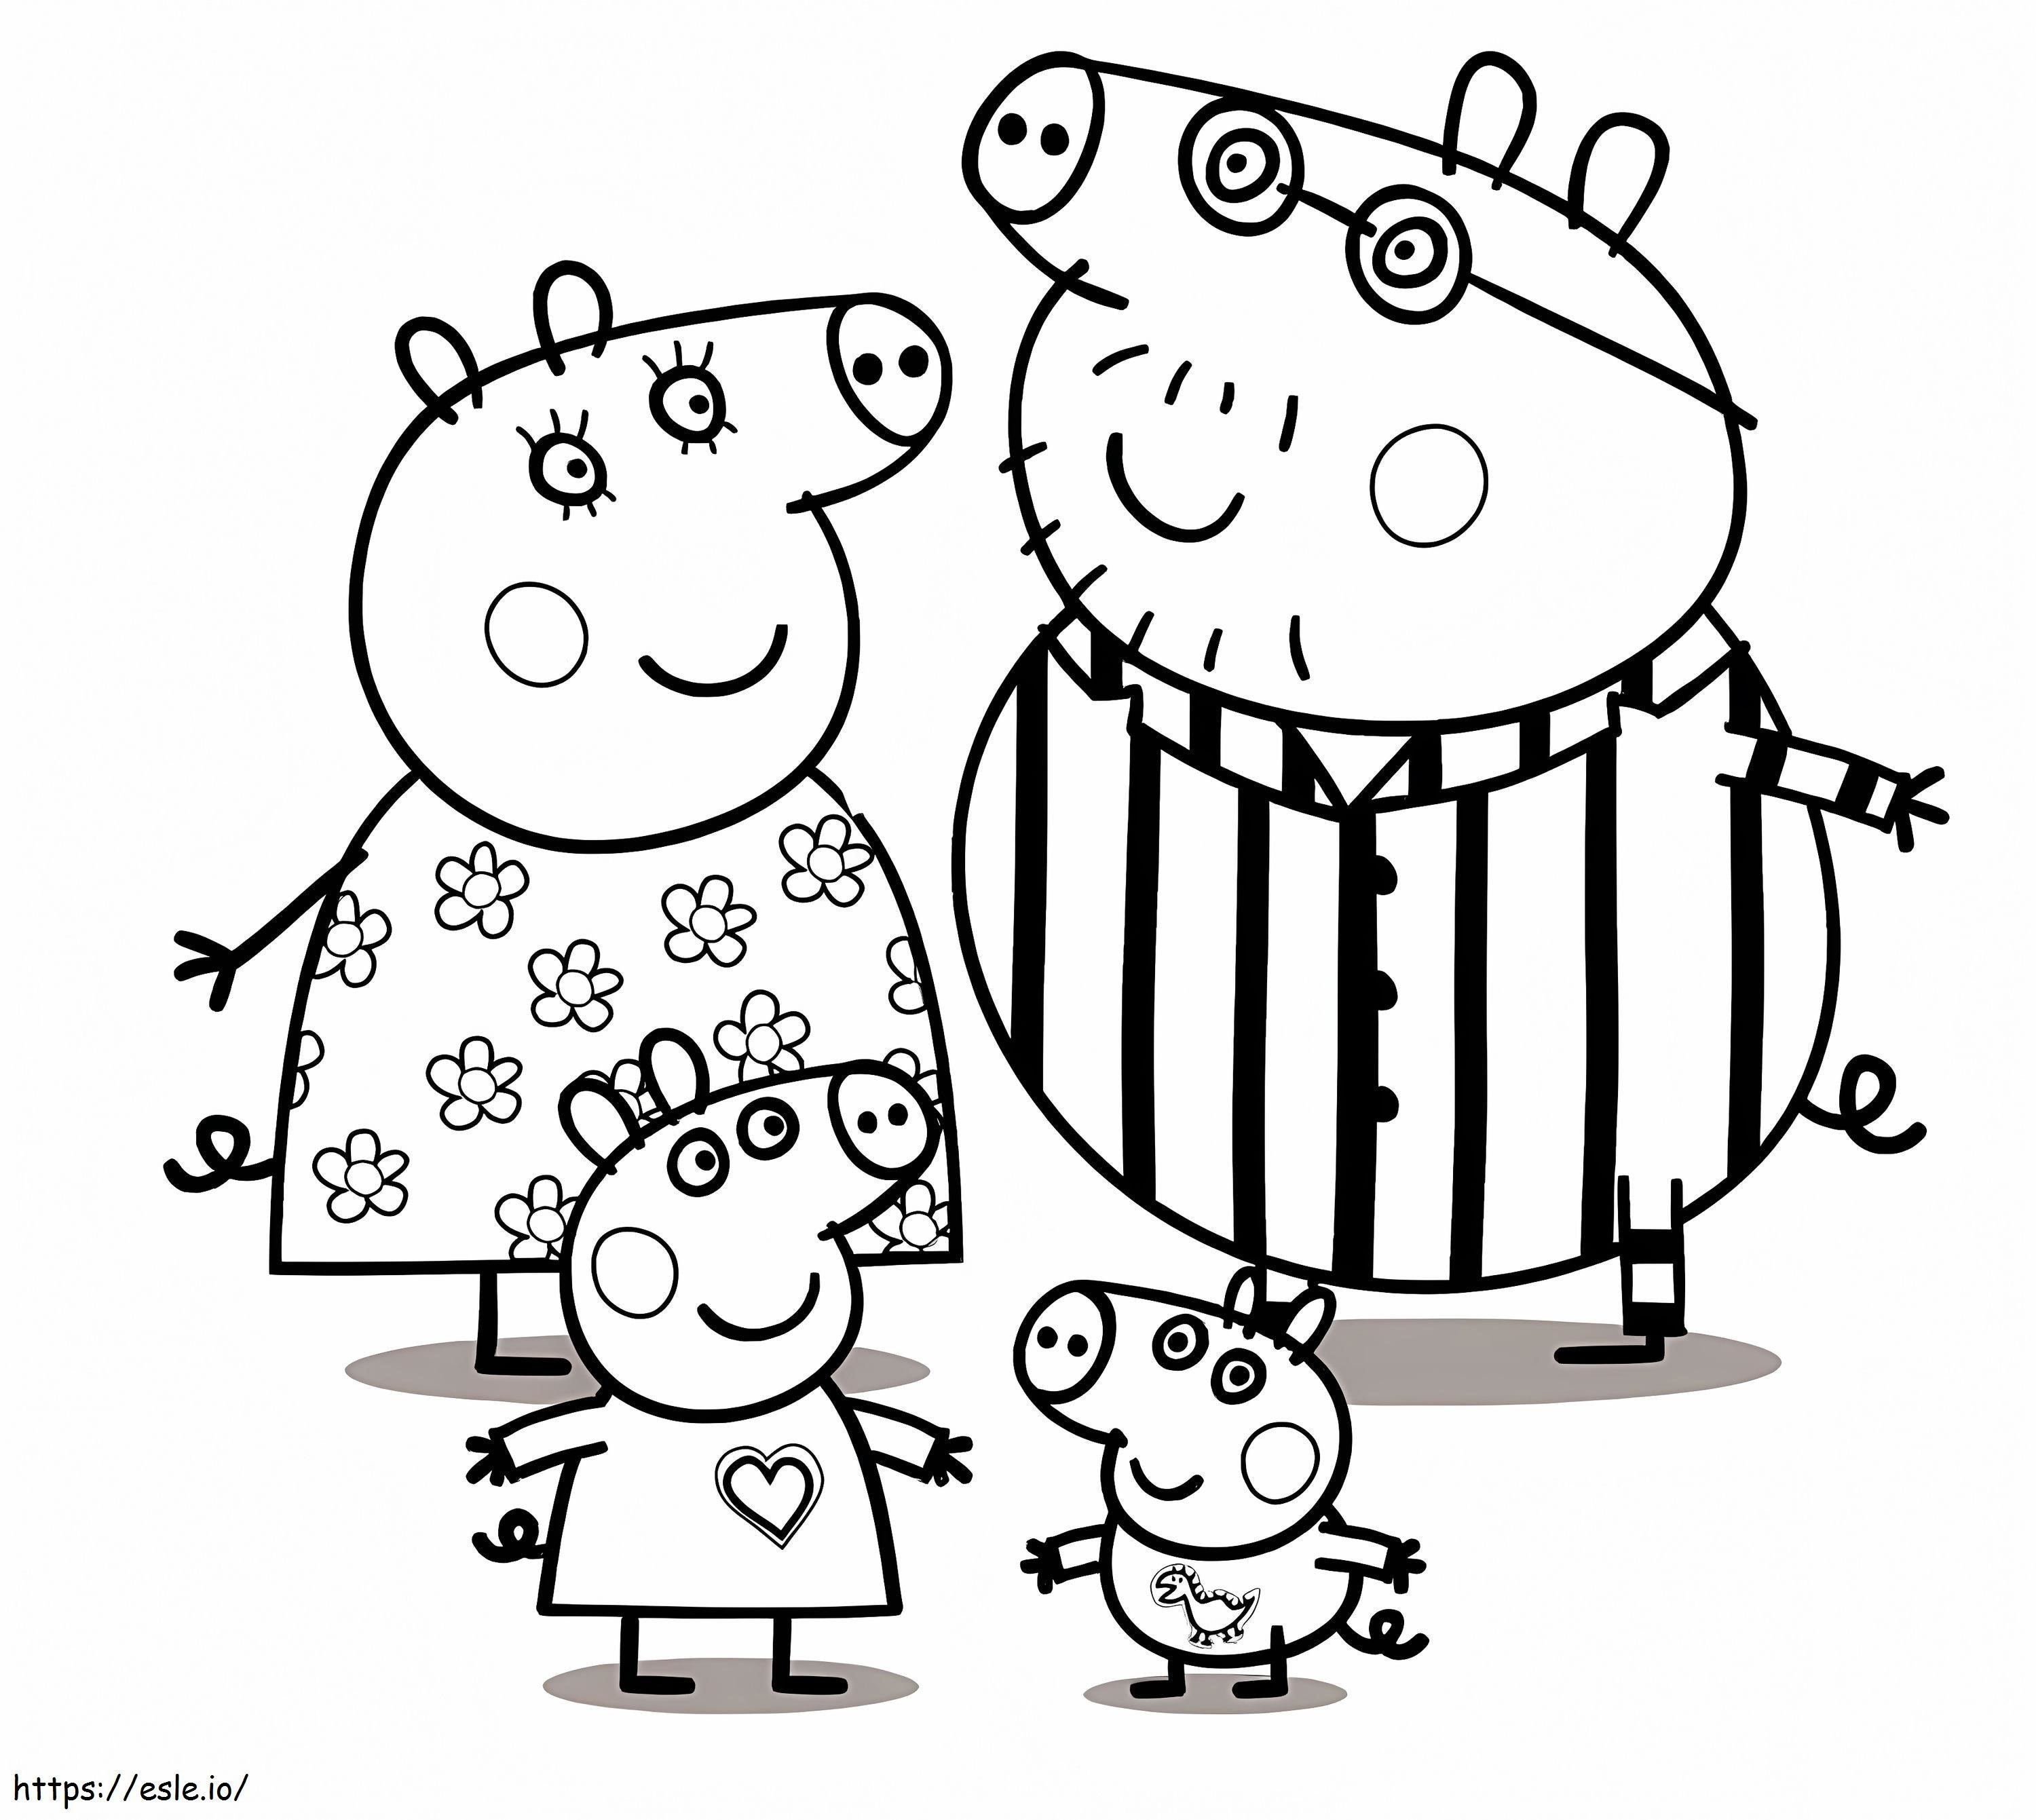 Rodzina Świnki Peppy w piżamie kolorowanka